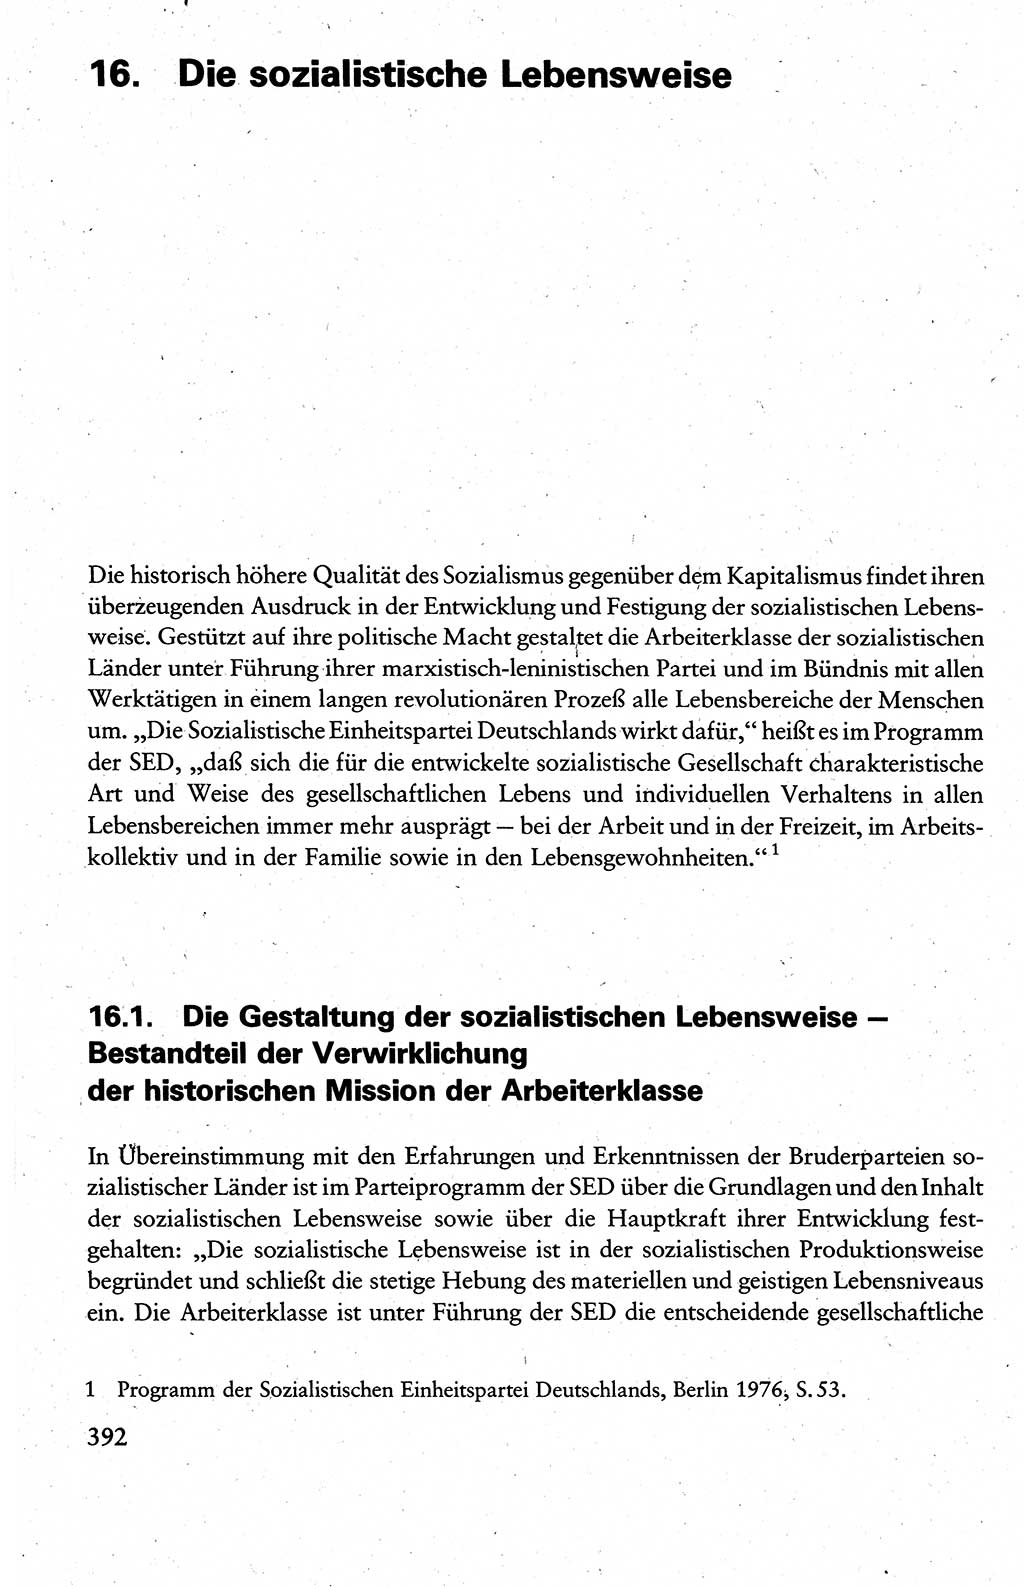 Wissenschaftlicher Kommunismus [Deutsche Demokratische Republik (DDR)], Lehrbuch für das marxistisch-leninistische Grundlagenstudium 1983, Seite 392 (Wiss. Komm. DDR Lb. 1983, S. 392)